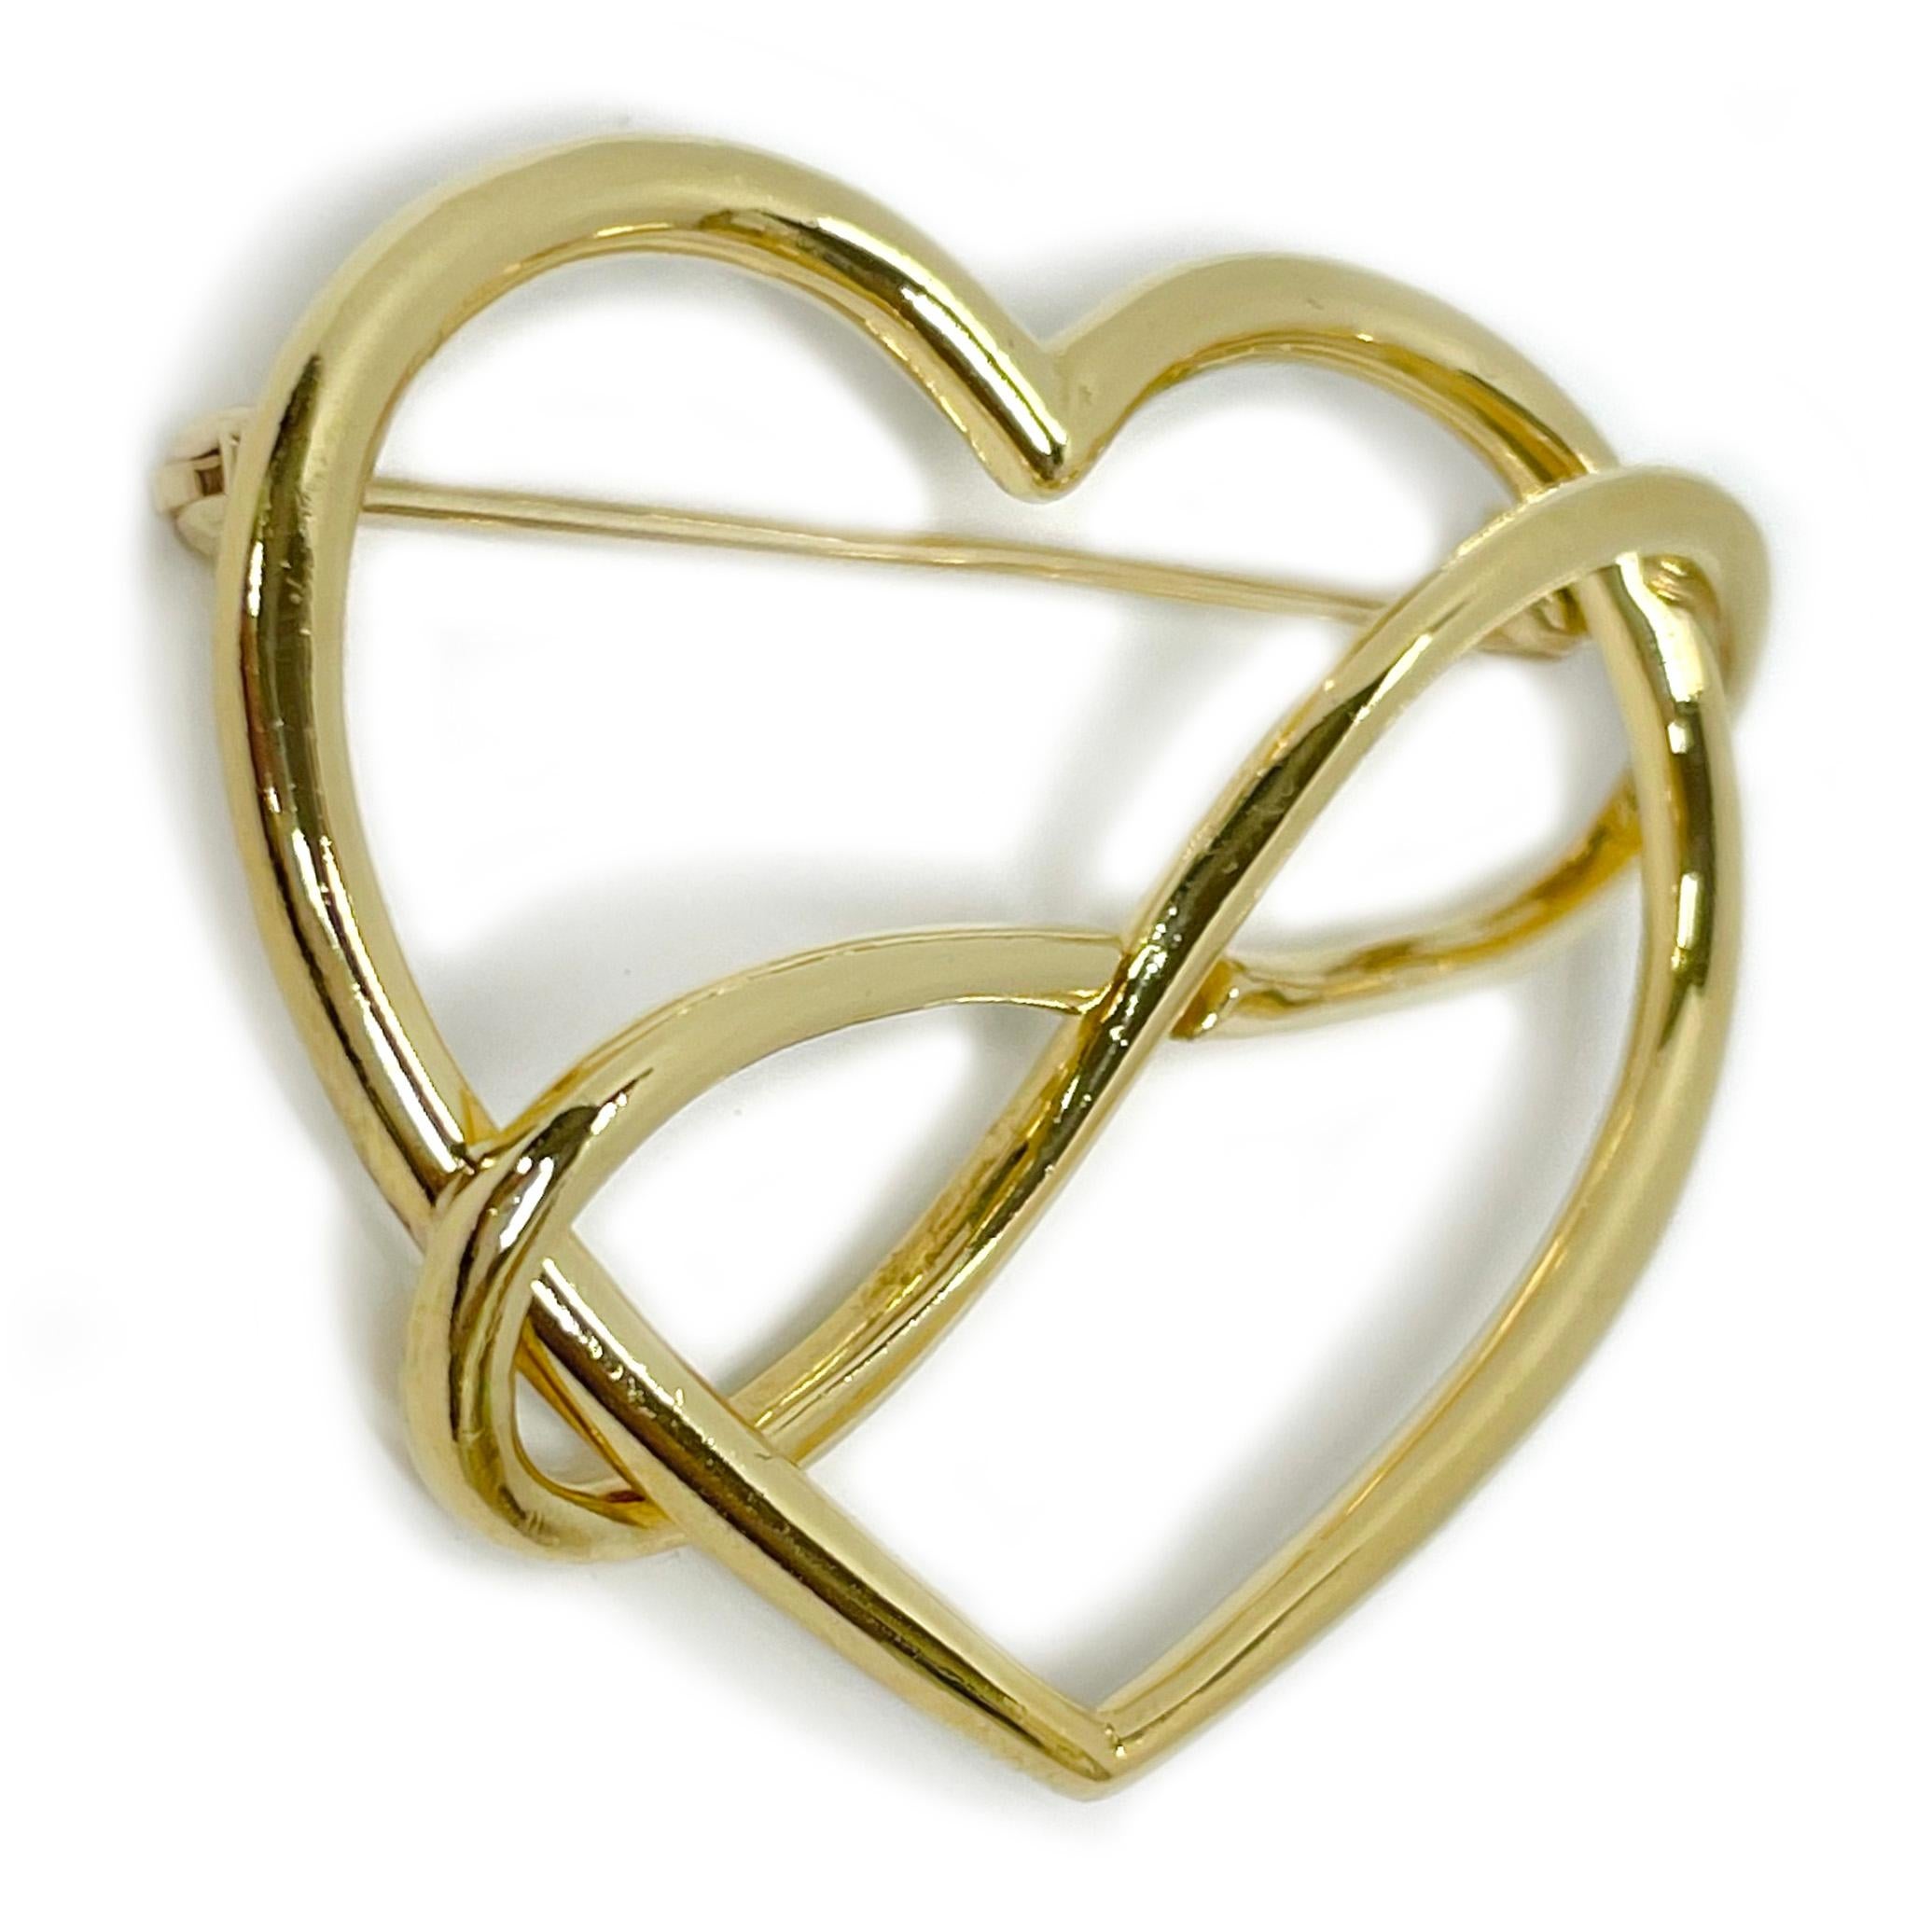 Broche en or jaune Movado 18 carats avec cœur à l'infini. Le cœur est fait d'un or de forme tubulaire avec une boucle à l'infini imbriquée en diagonale sur le cœur. La broche présente deux boucles imbriquées qui créent un cœur. Le dos de la broche